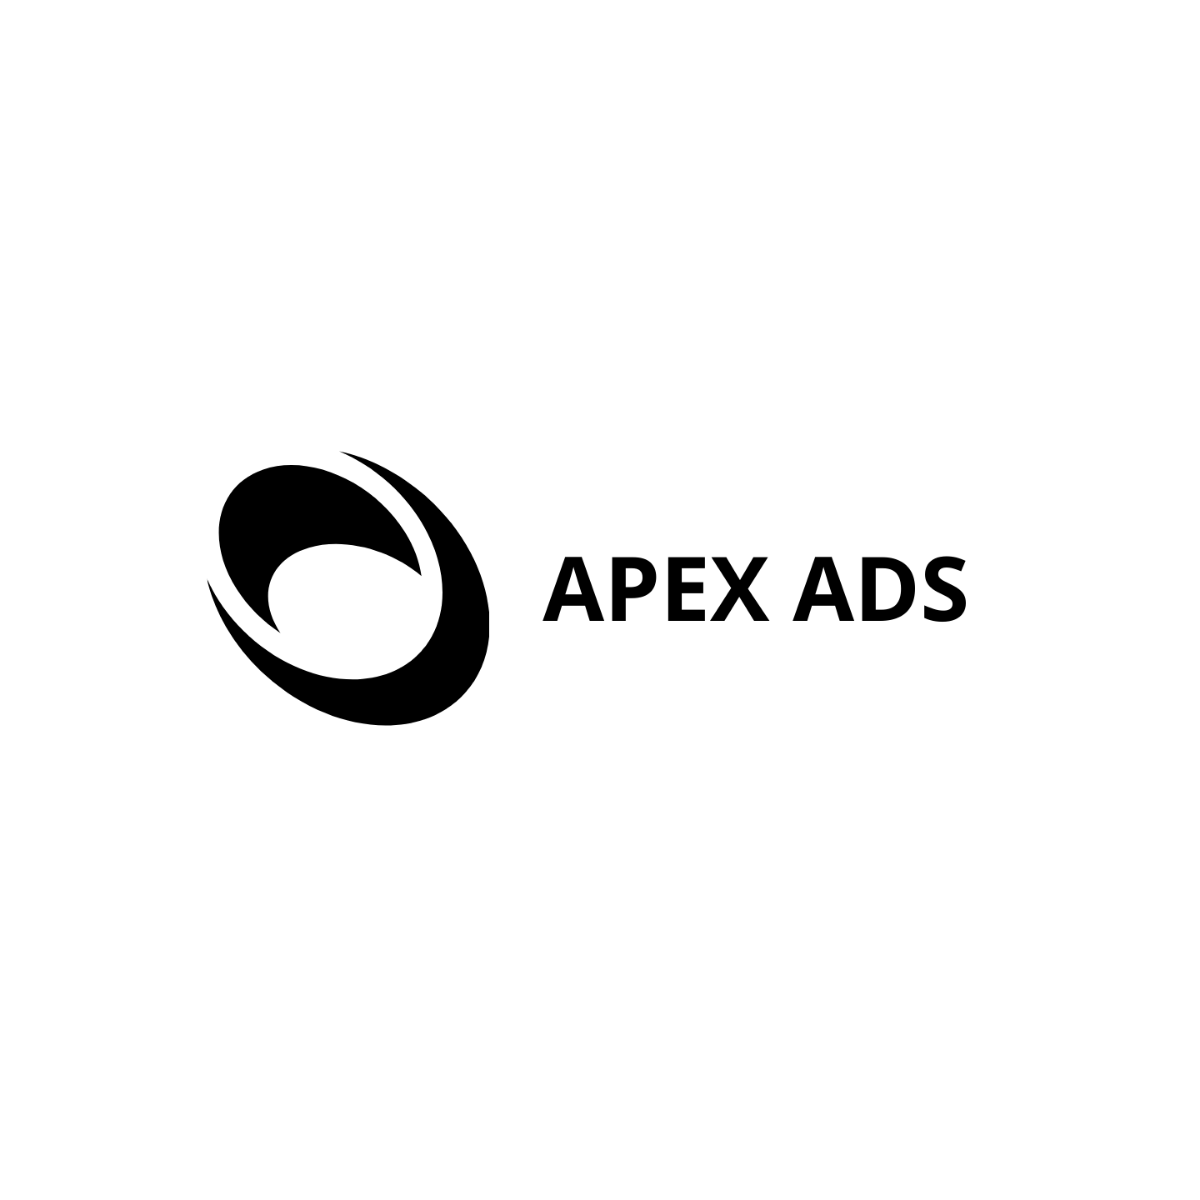 Advertising Consultant logo-Design Template